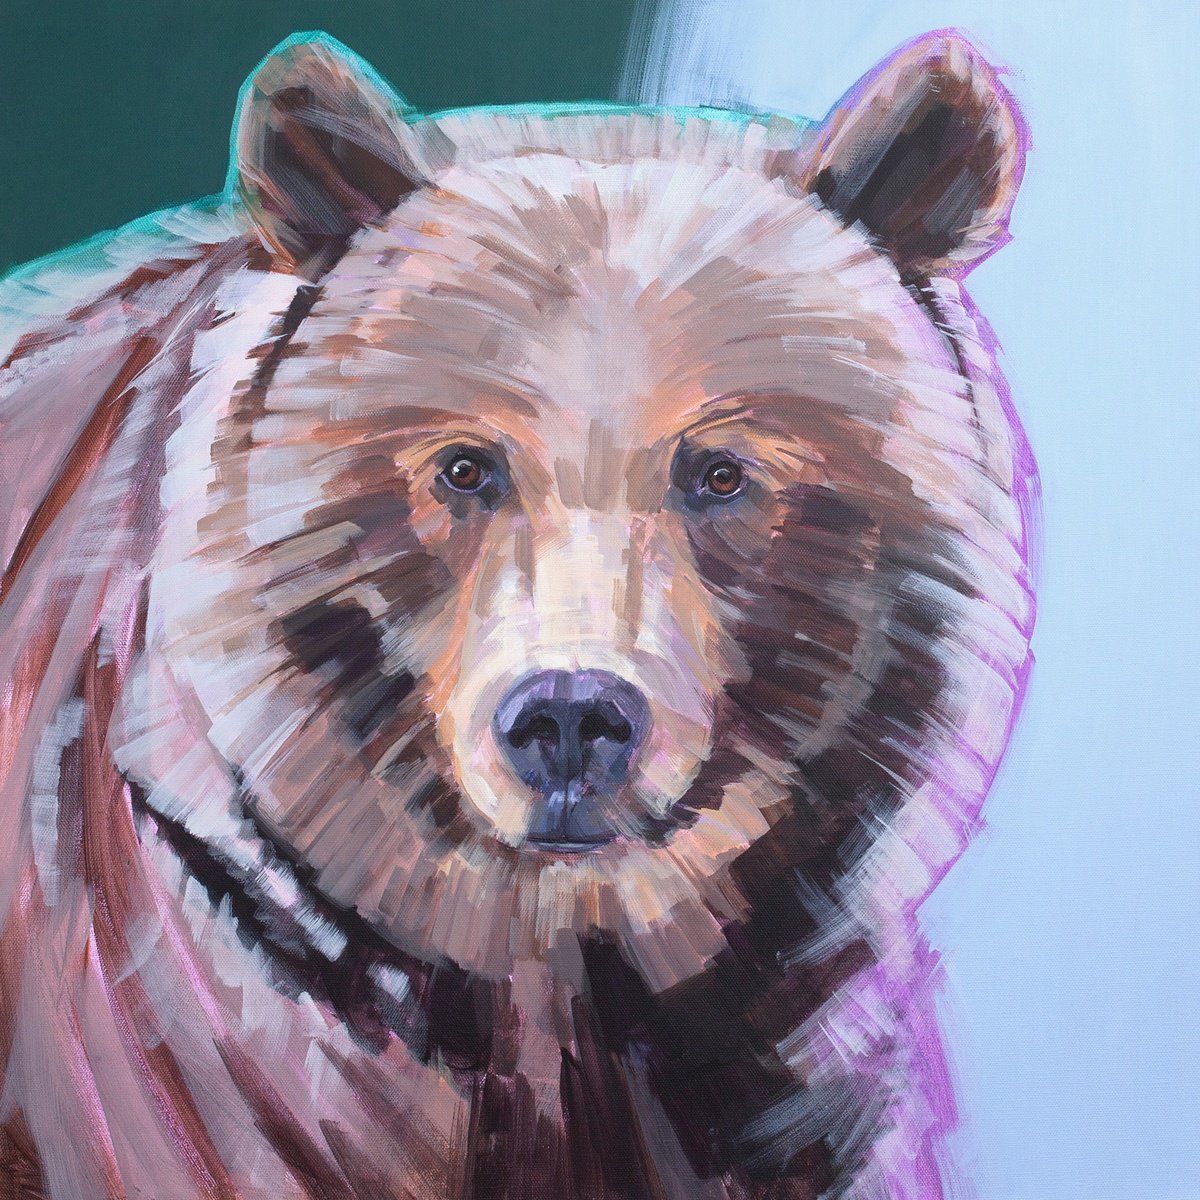 The Bear #1 by Antonina Banderova